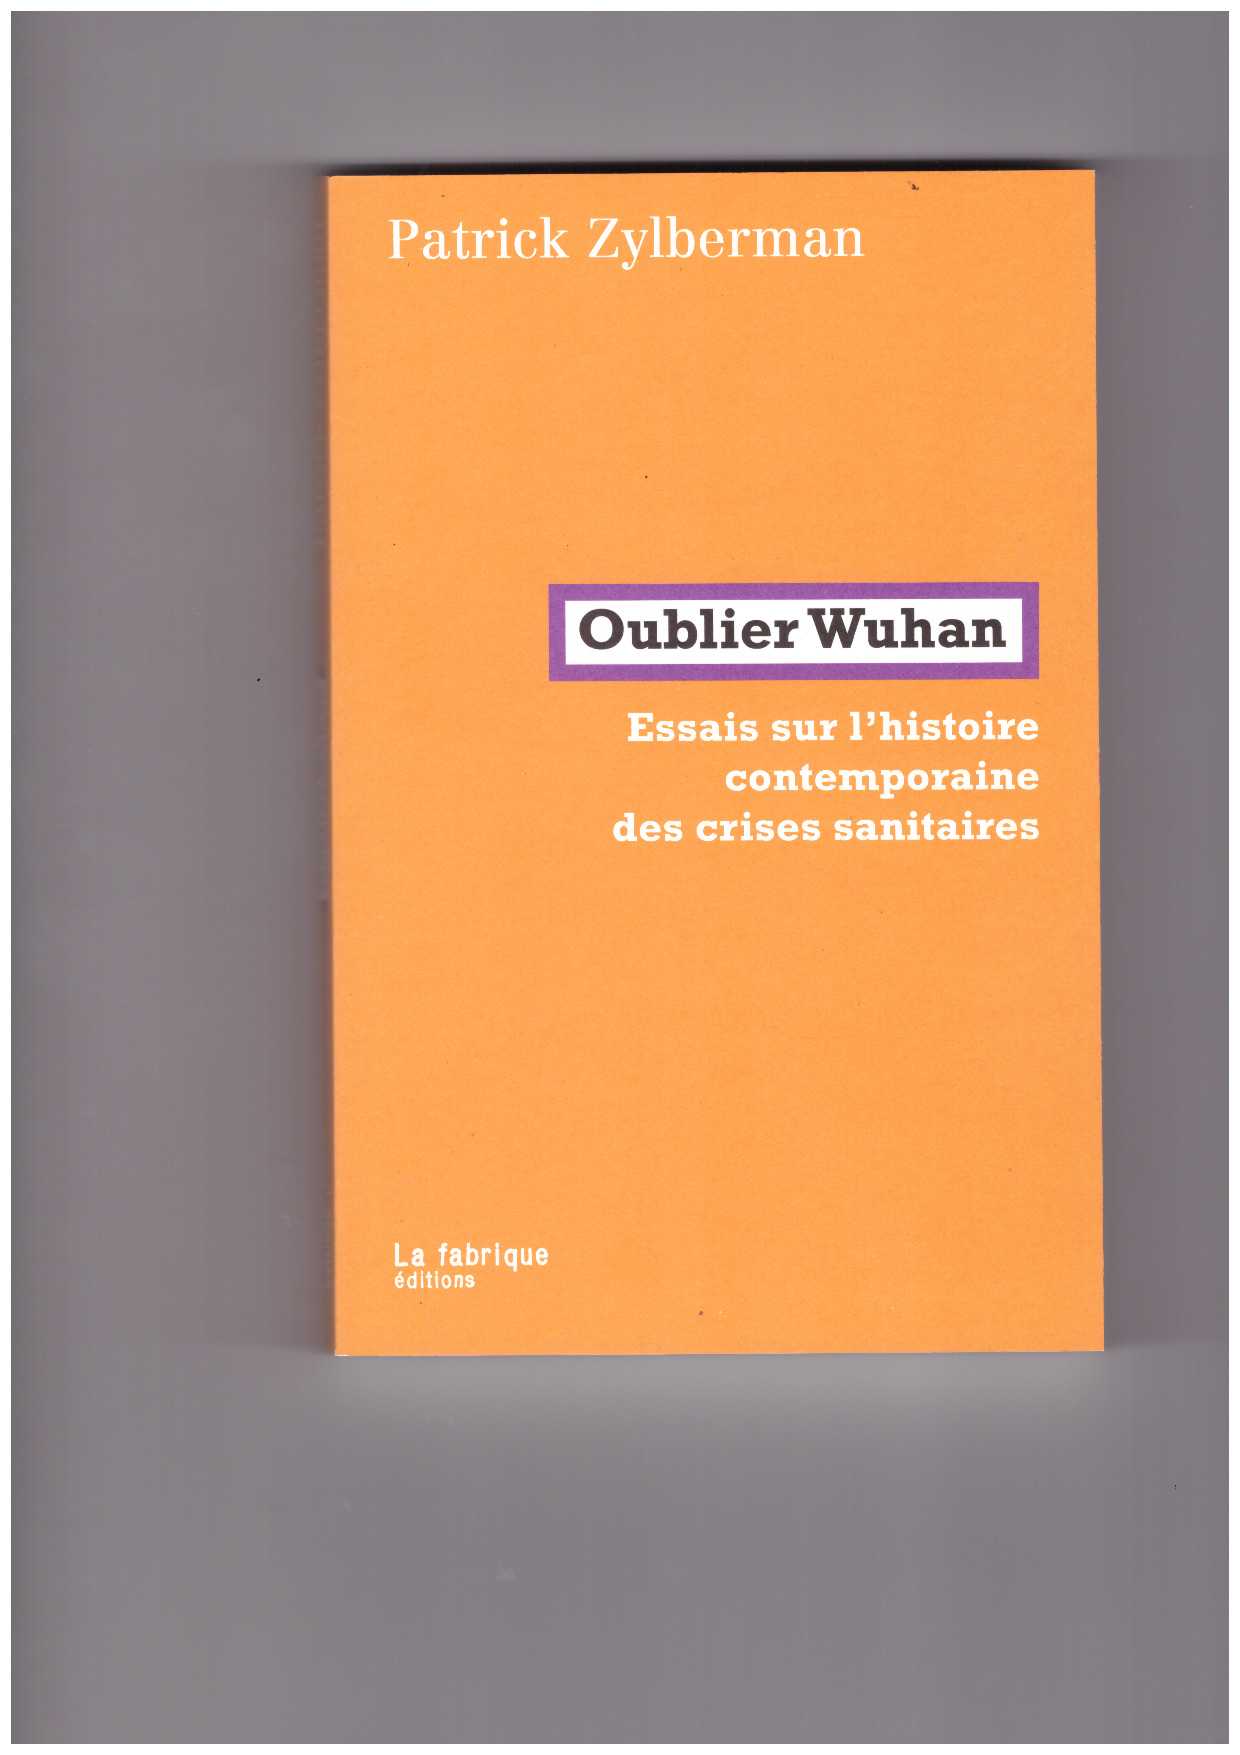 ZYLBERMAN; Patrick - Oublier Wuhan